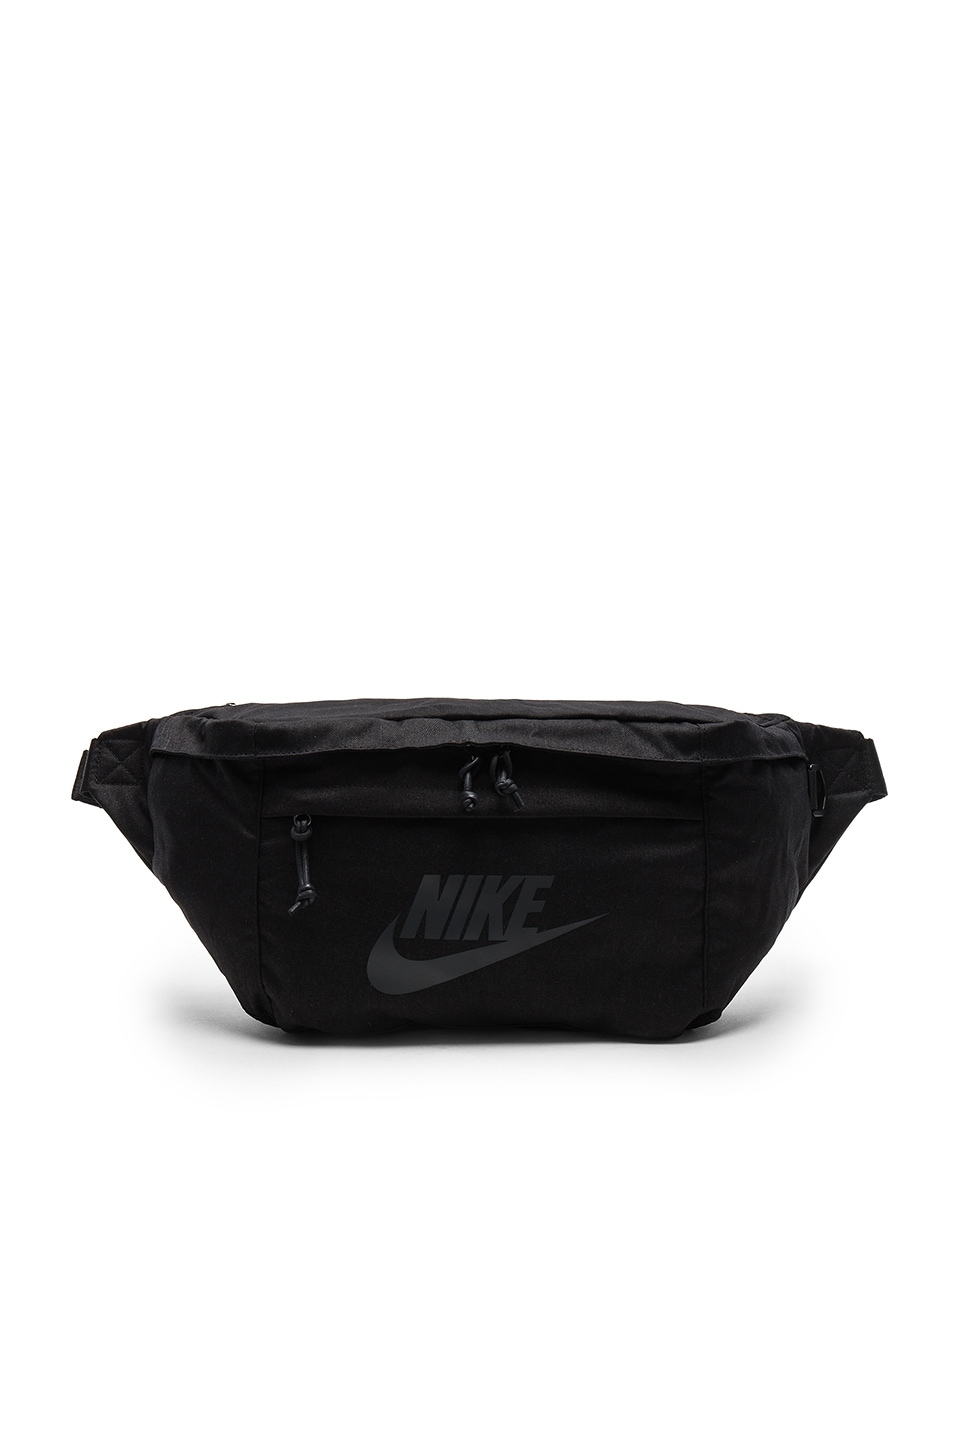 Nike Hip Pack in Black | REVOLVE